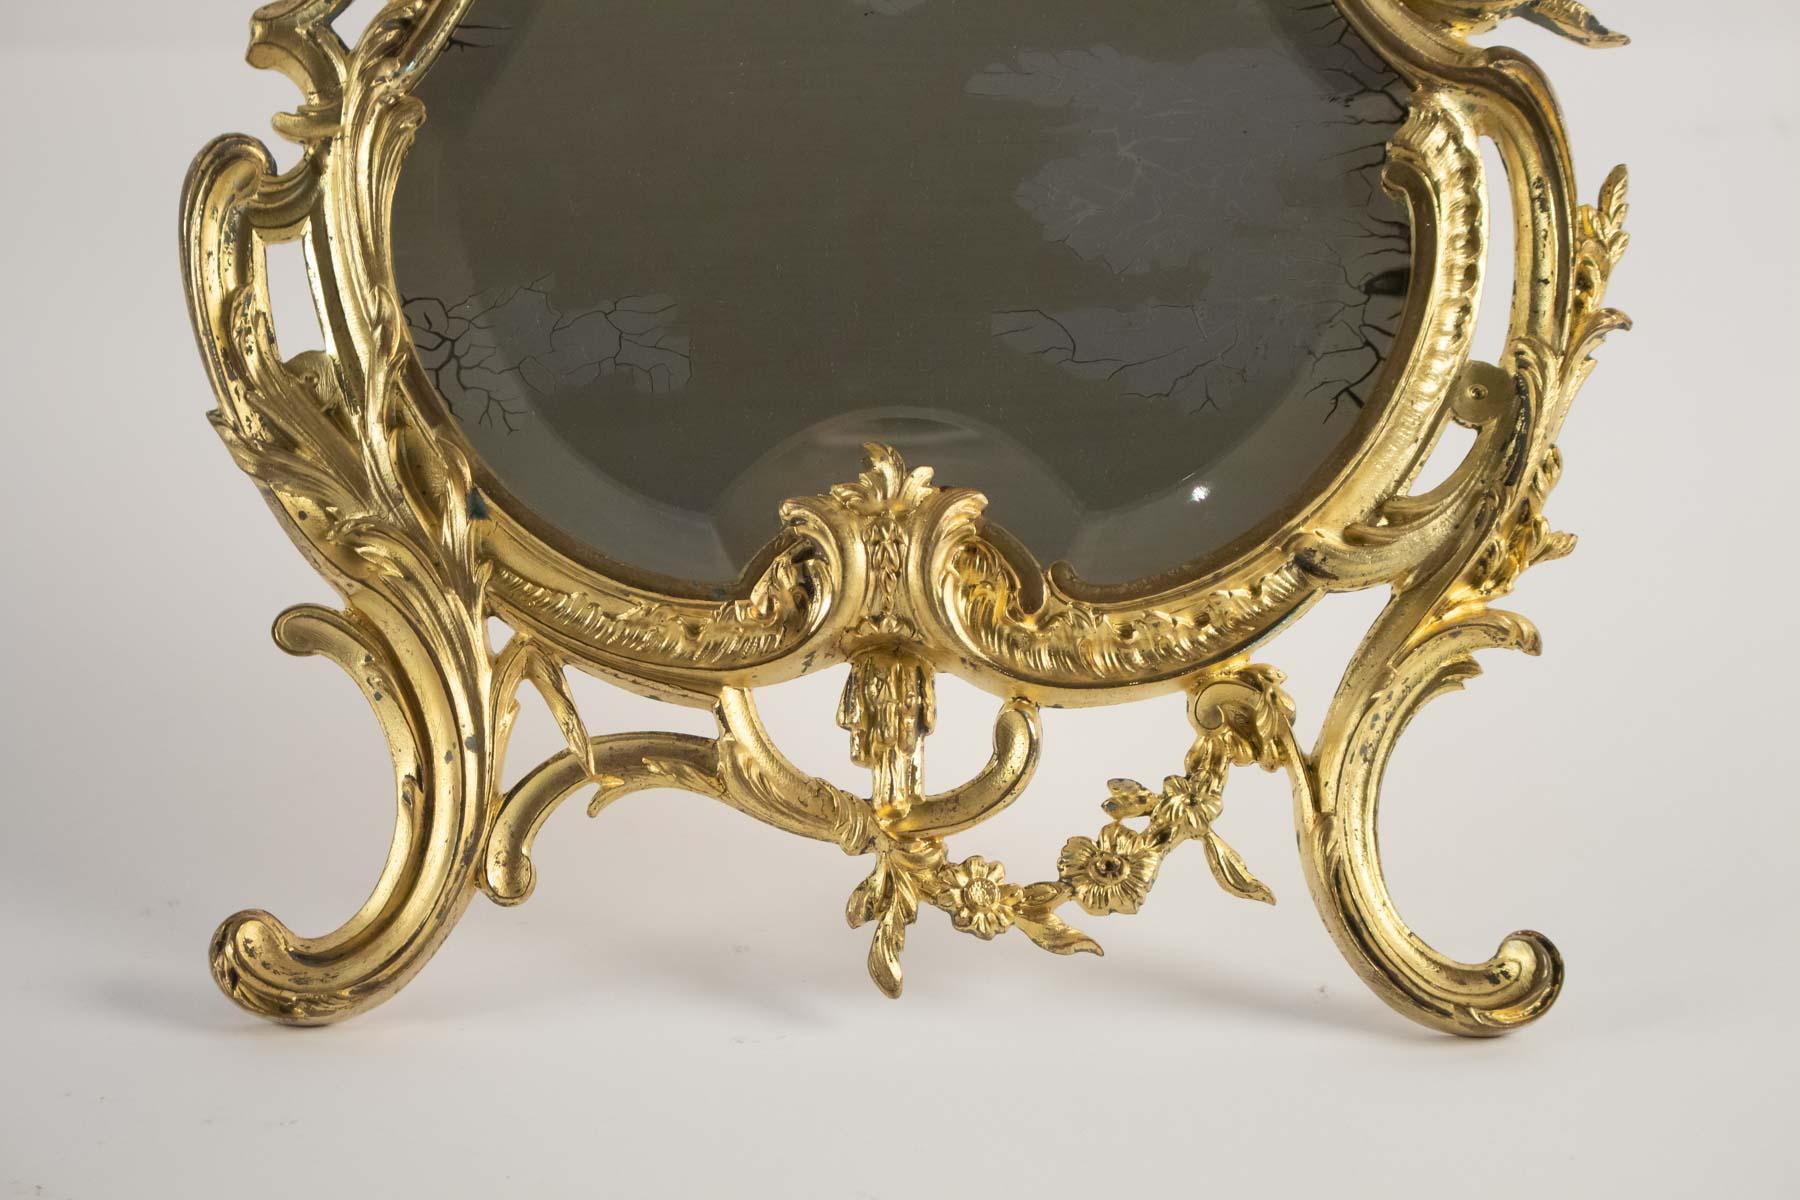 Miroir de table en bronze doré original, Napoléon III, Style Louis XV, 19ème siècle. 
Dimensions : H 41cm, L 27cm, L 2cm.